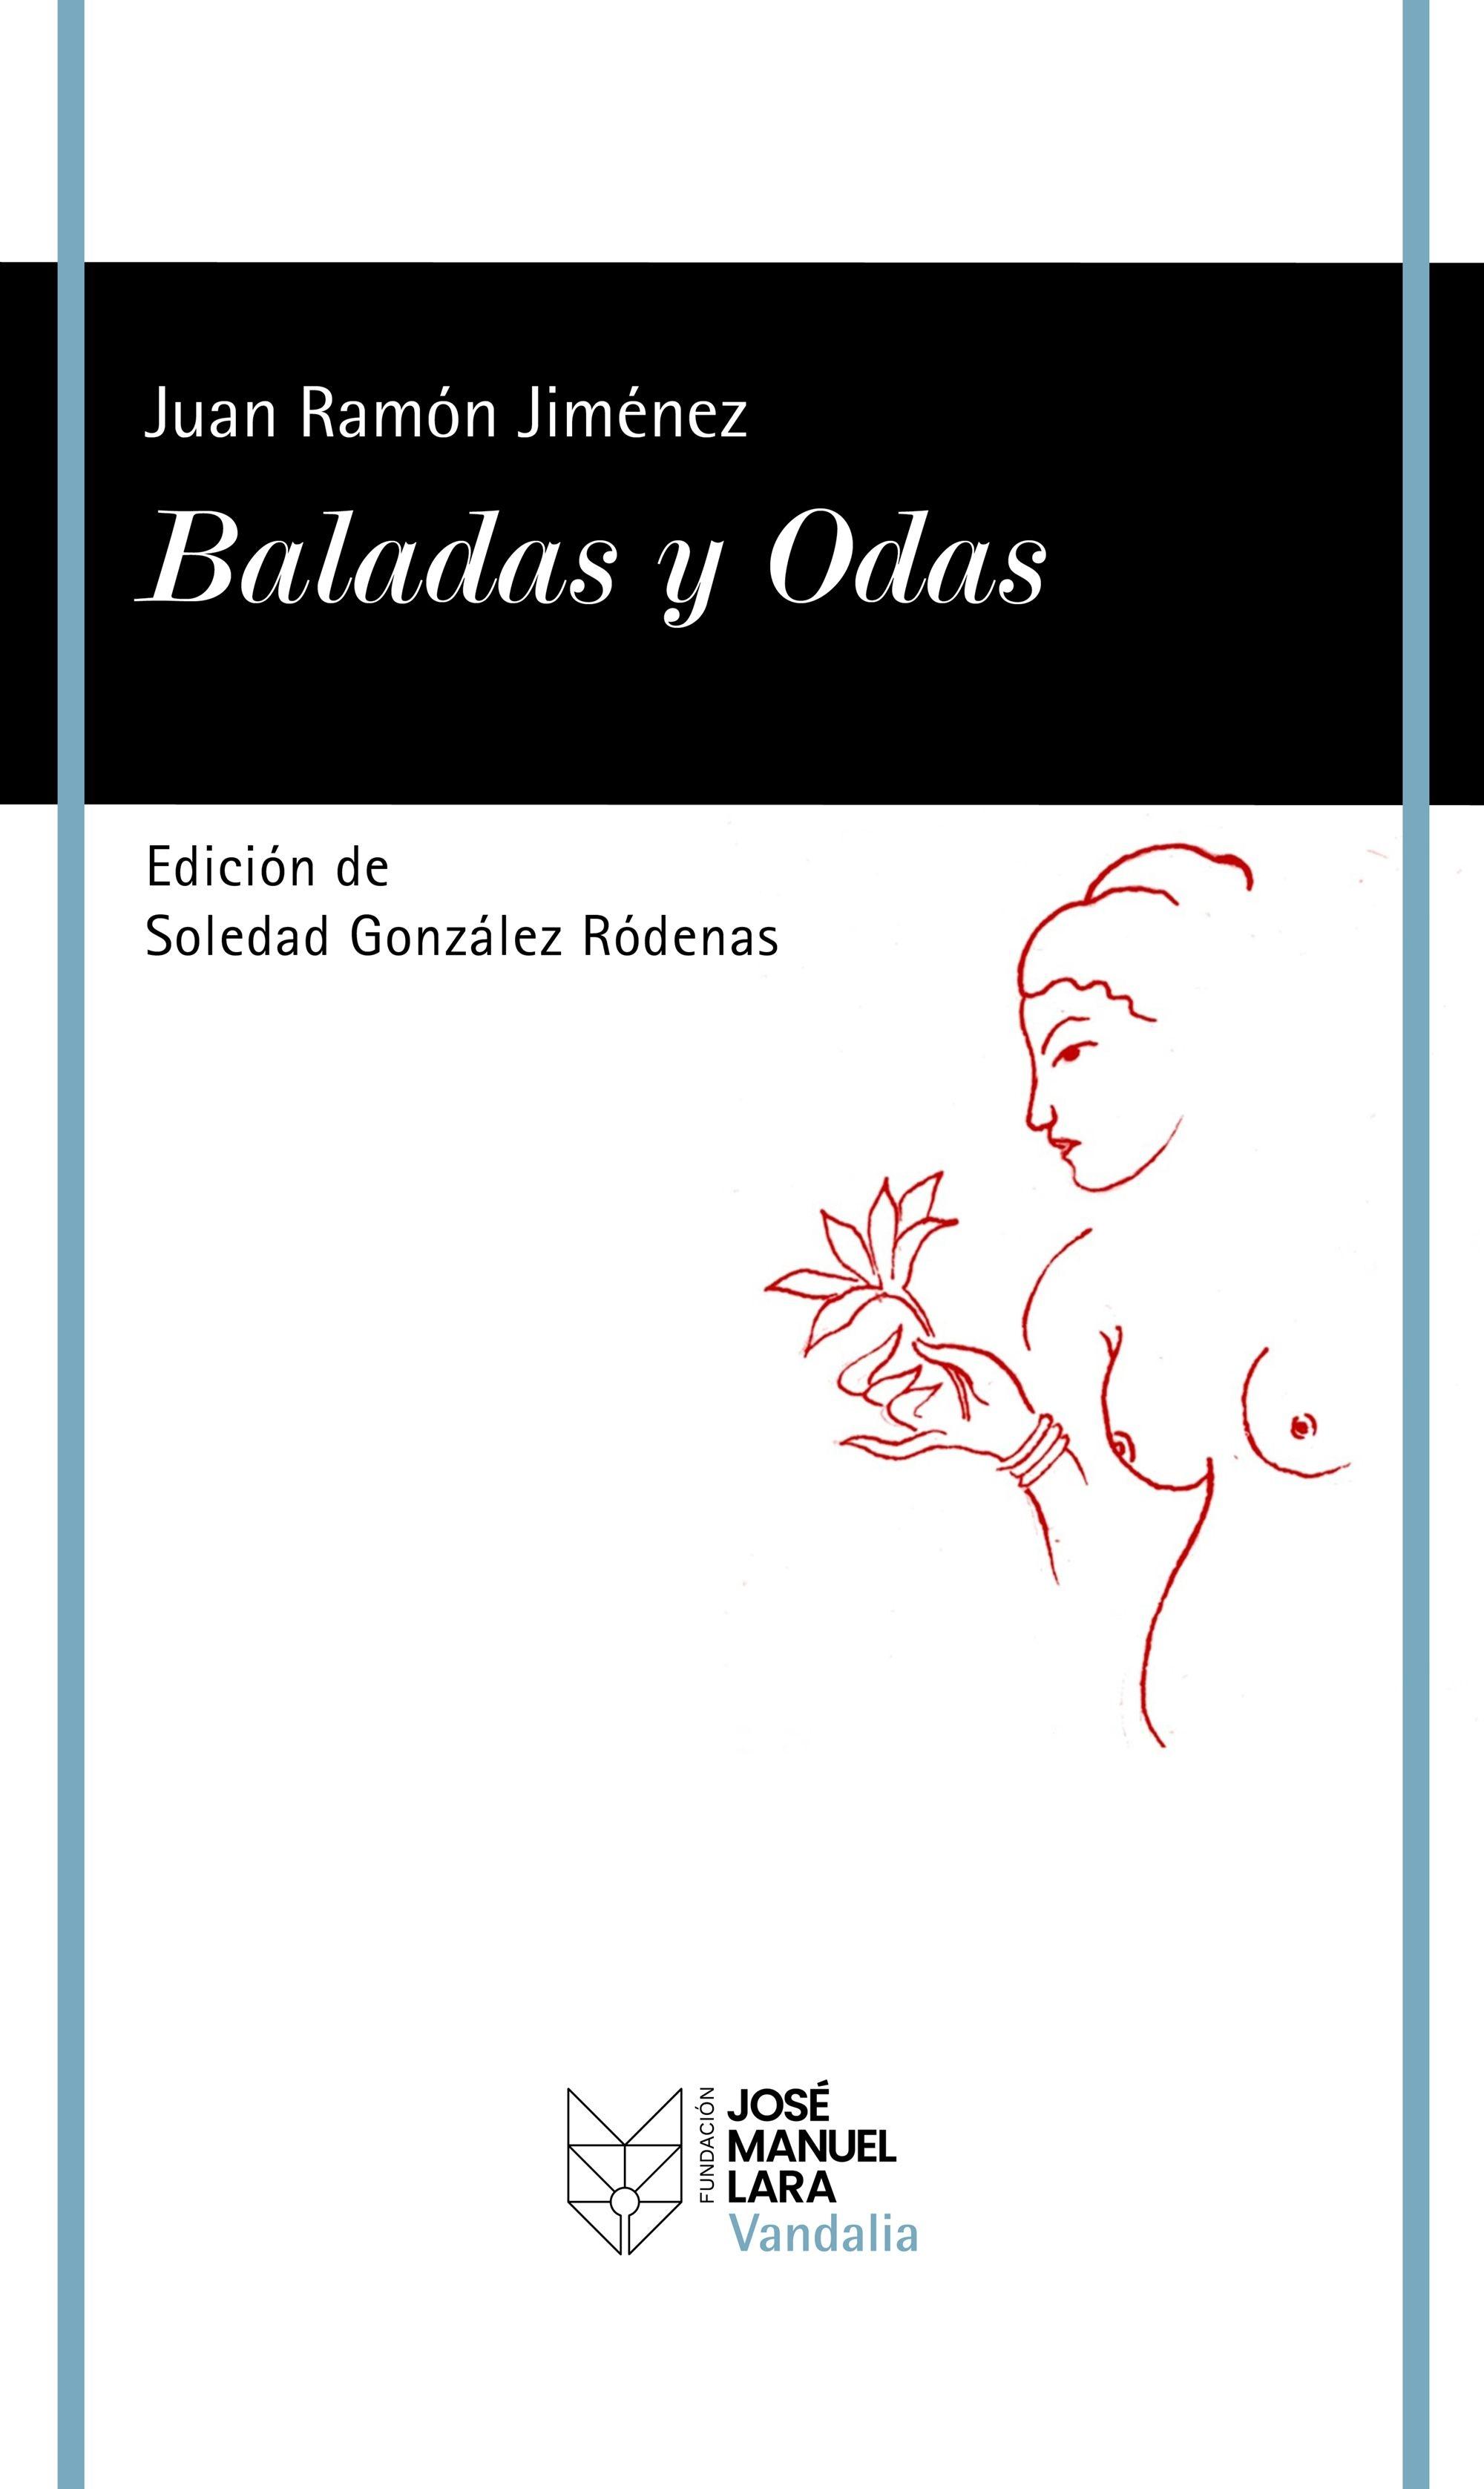 Baladas y Odas "Edición de Soledad González Ródenas". 